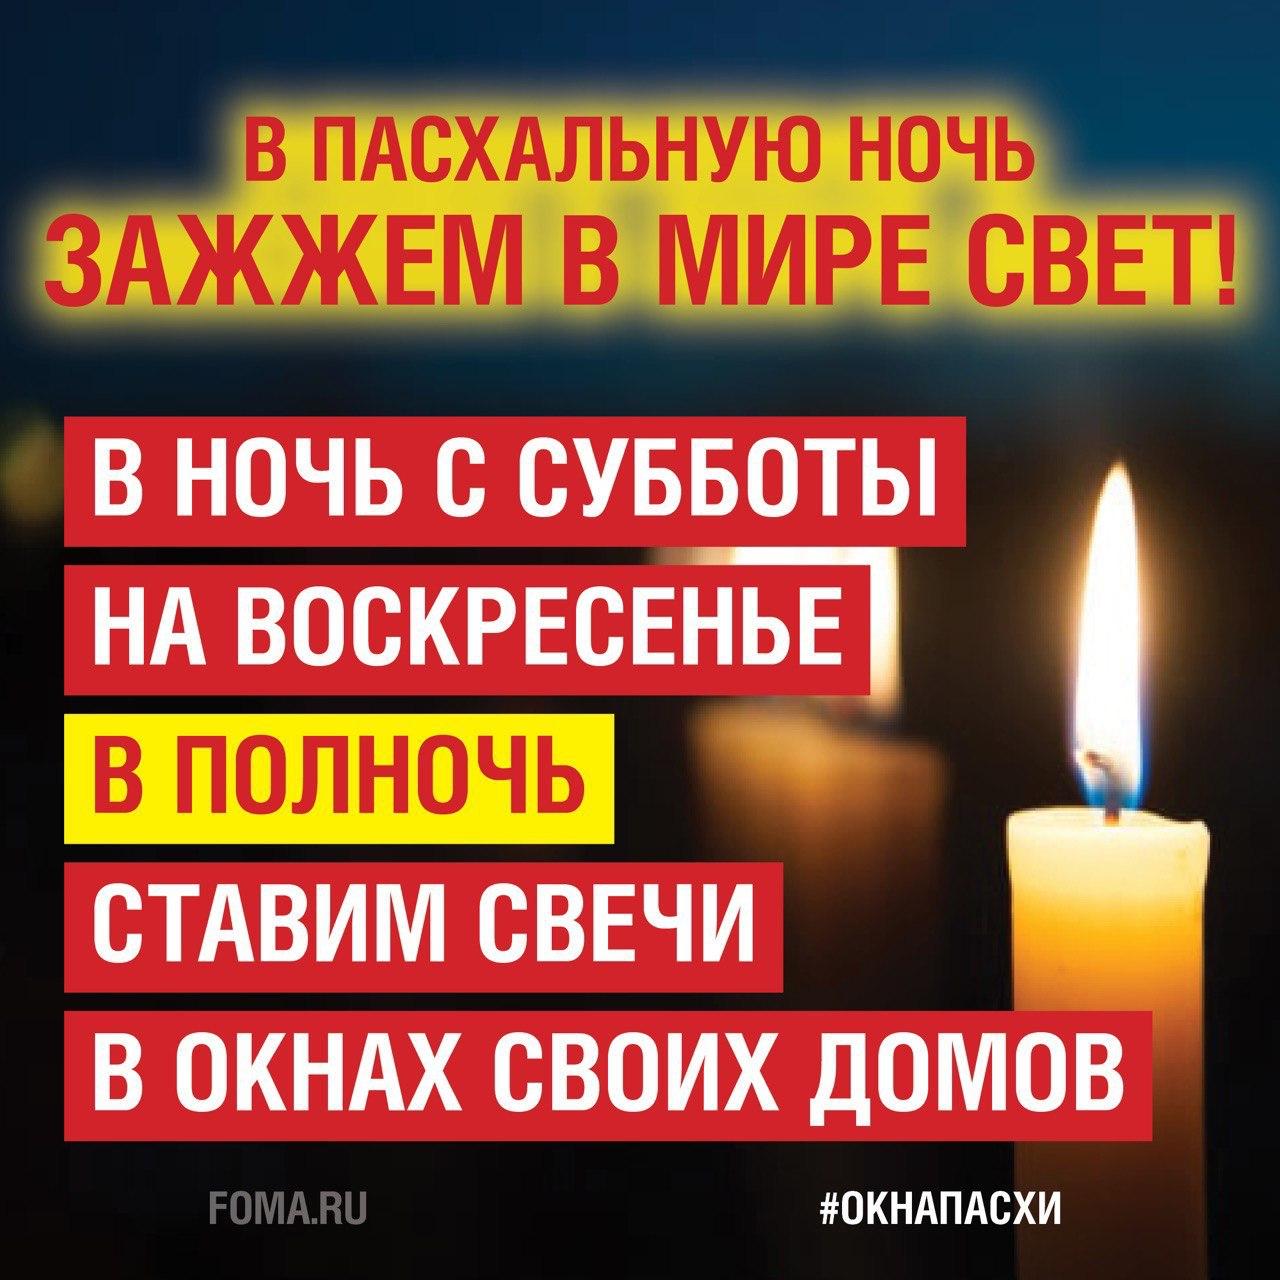 Православные в условиях карантина зажгут свечи в окнах в пасхальную ночь